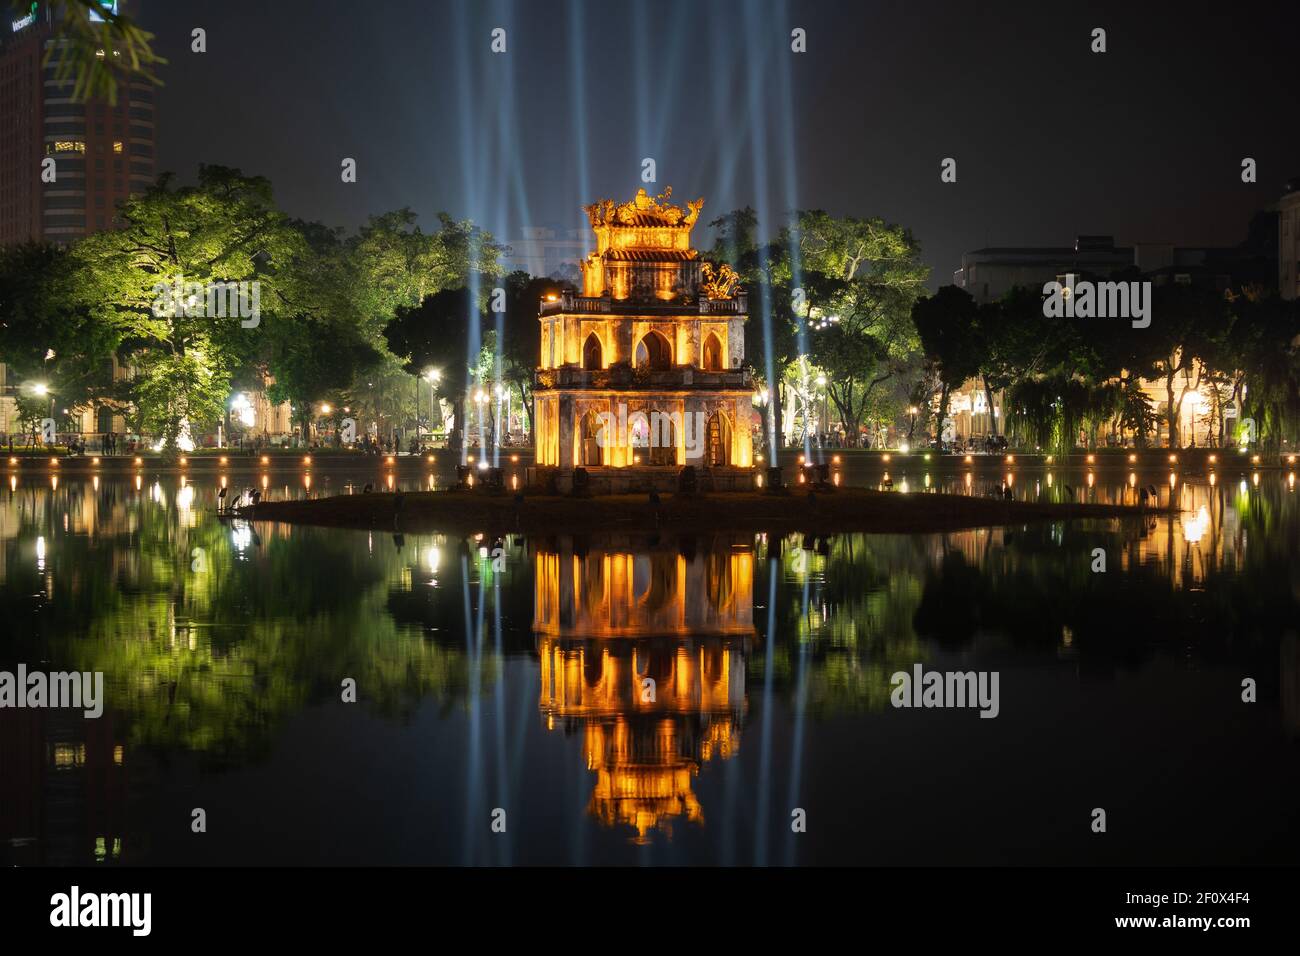 Vue de nuit du site historique Turtle Tower sur le lac Hoan Kiem dans le centre de Hanoi, Vietnam. Banque D'Images